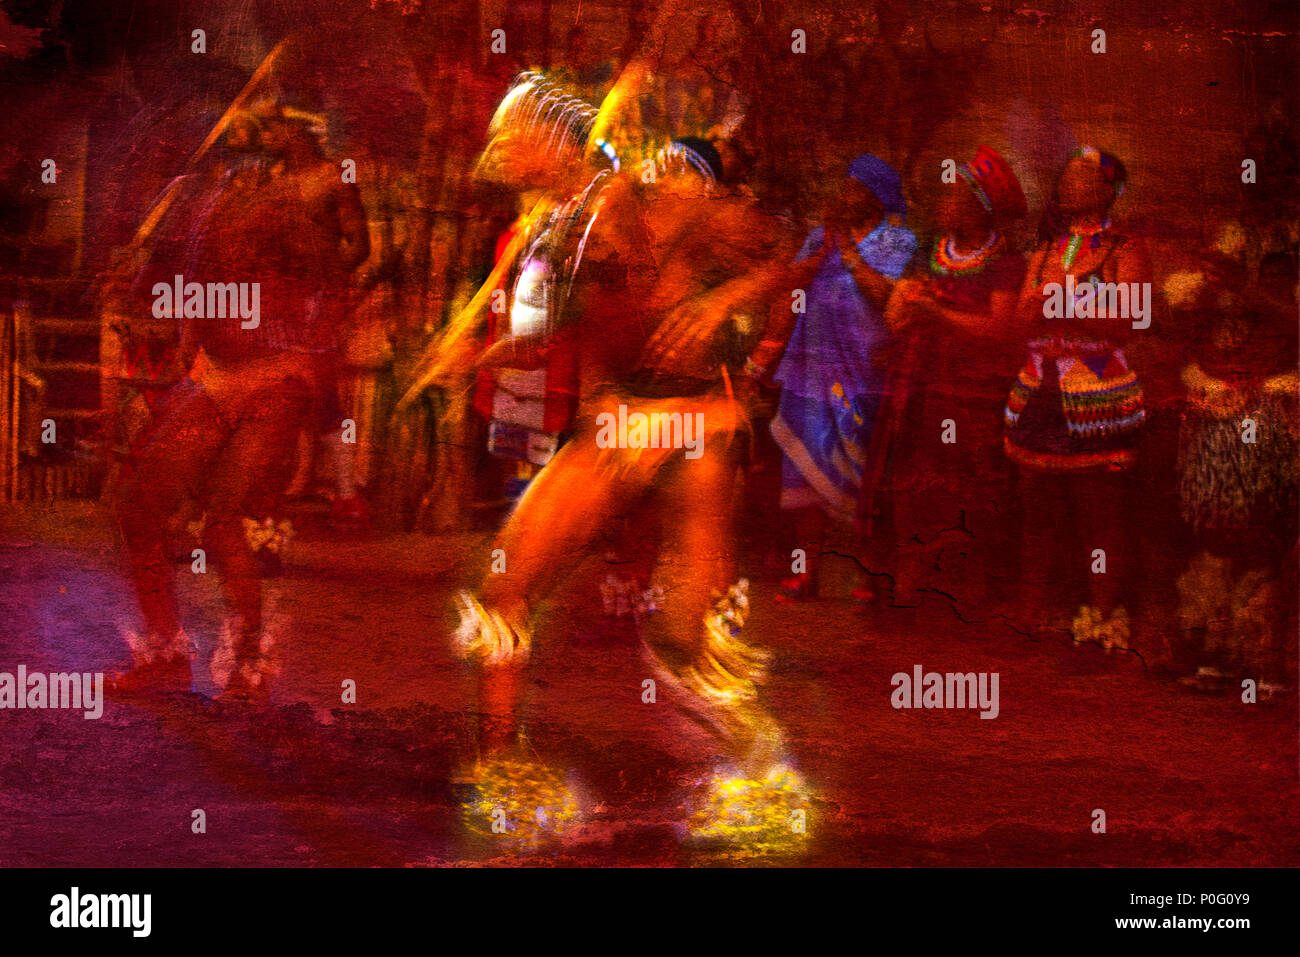 Brillamment colorées des danseurs africains en mouvement contre un fond texturé rouge Banque D'Images